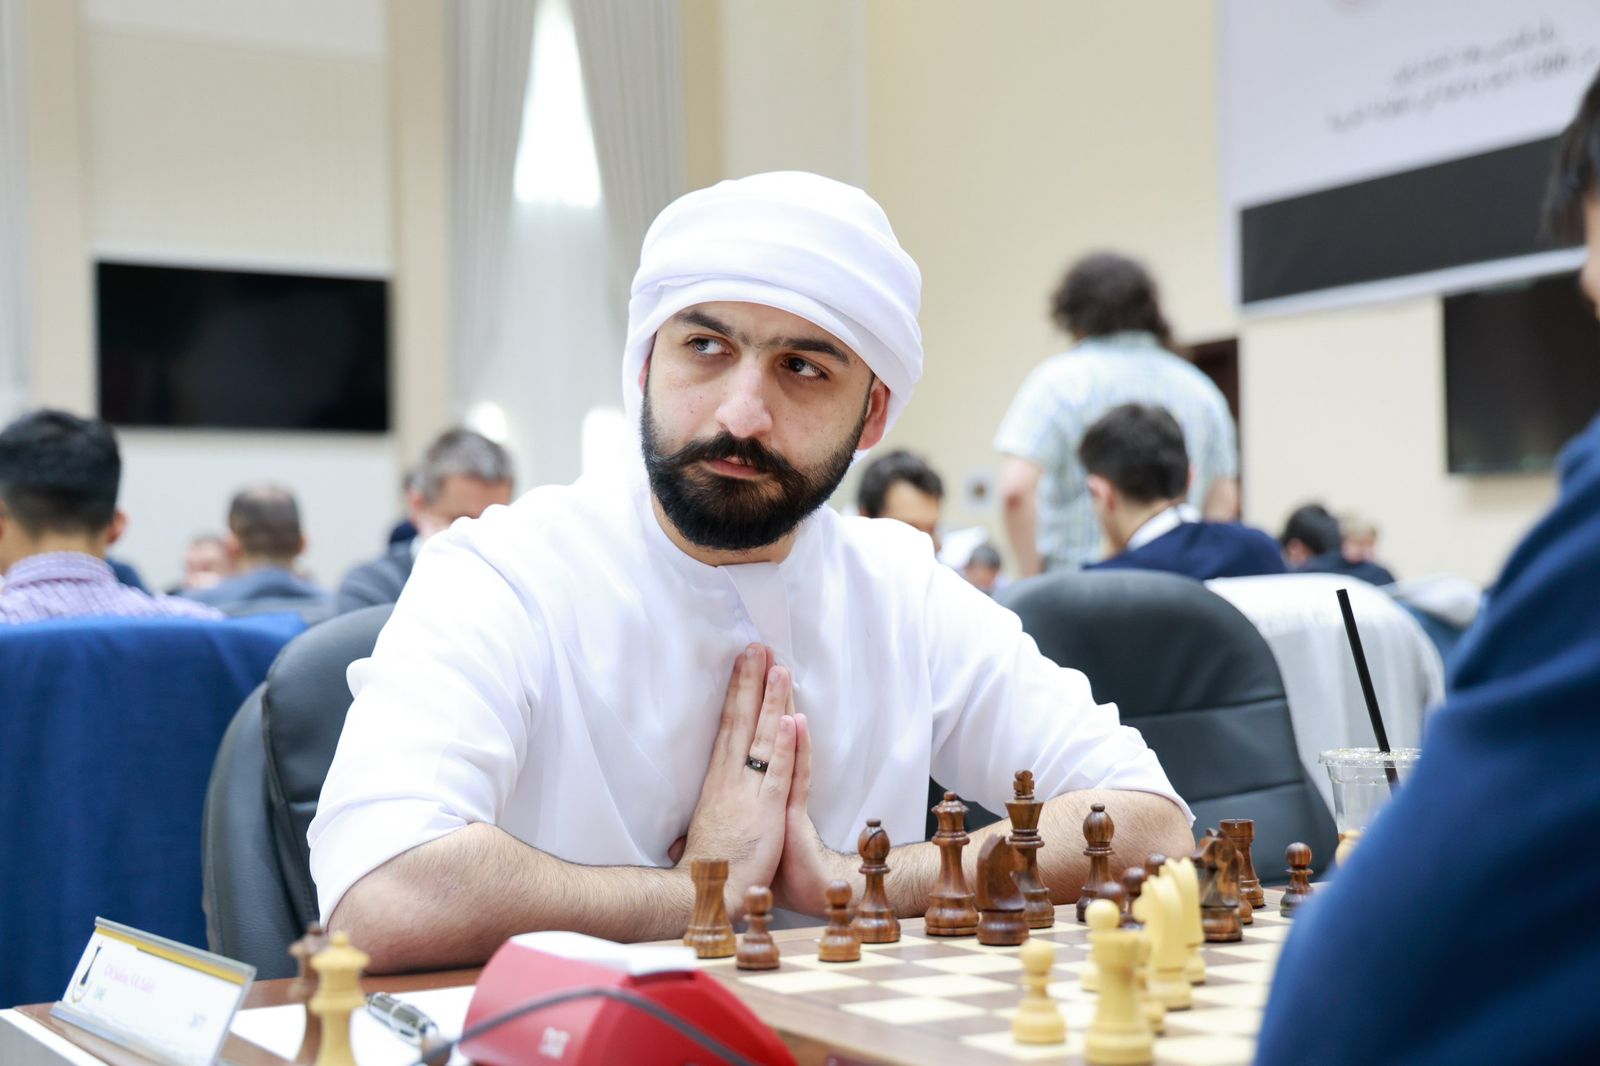 塞勒姆·阿卜杜勒·拉赫曼 (Salem Abdul Rahman) 在沙迦国际象棋大师锦标赛中名列前茅